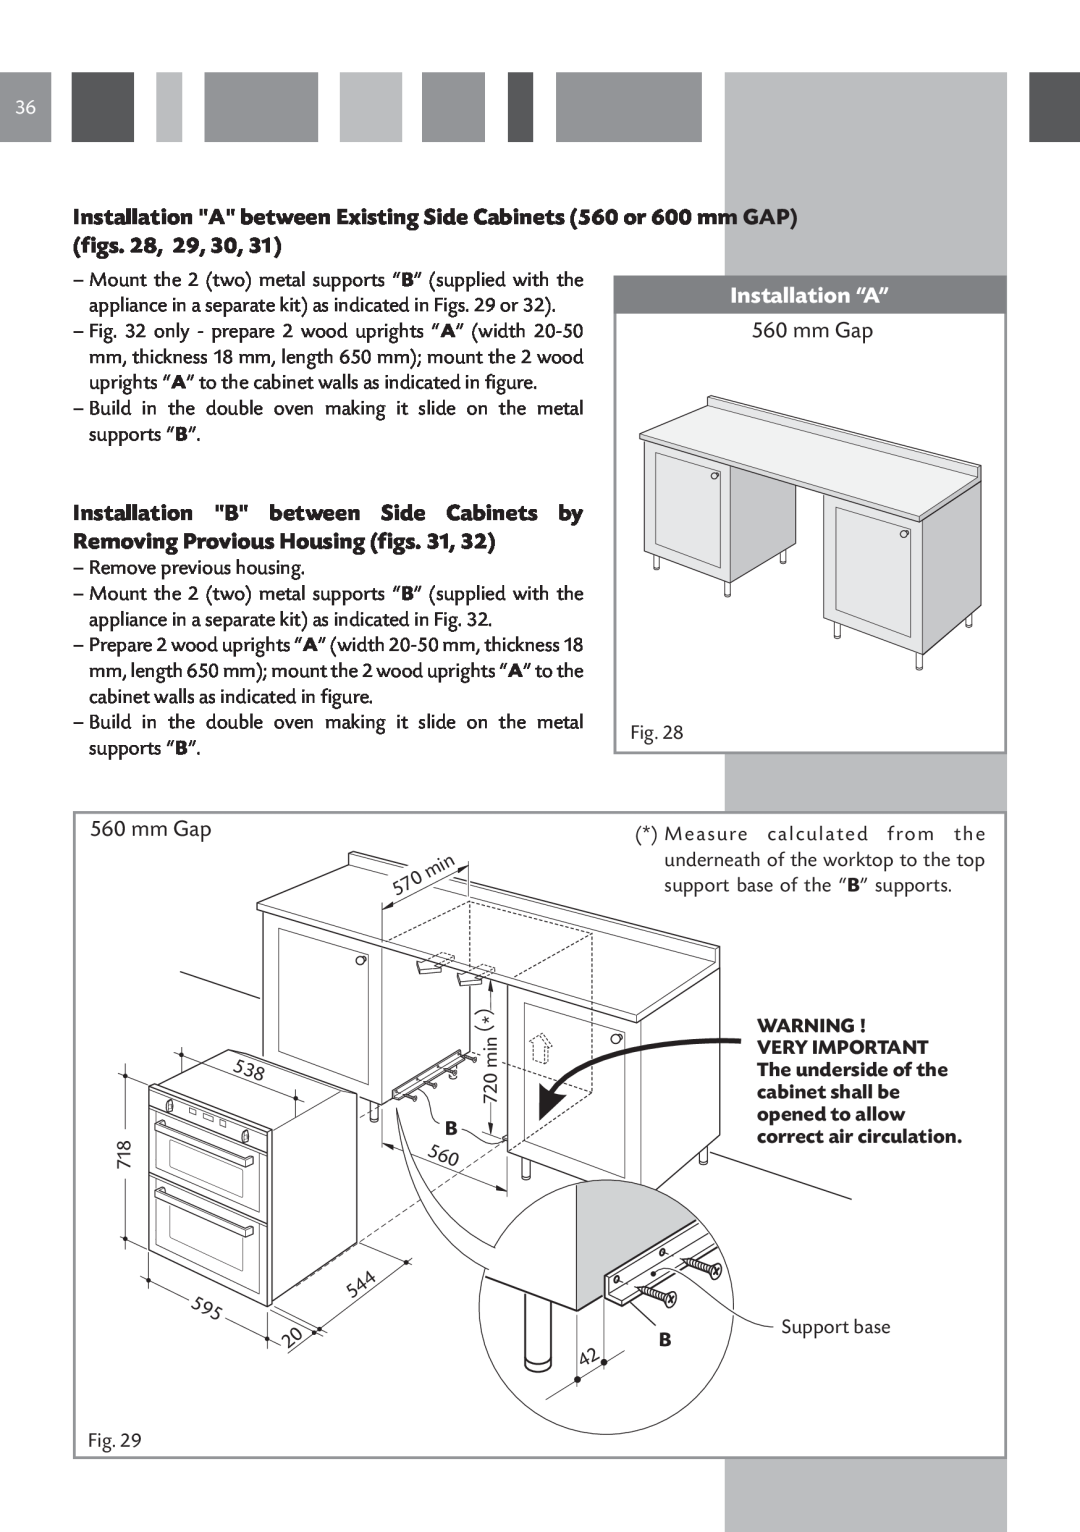 CDA DV 770 manual Installation “A”, mm Gap 